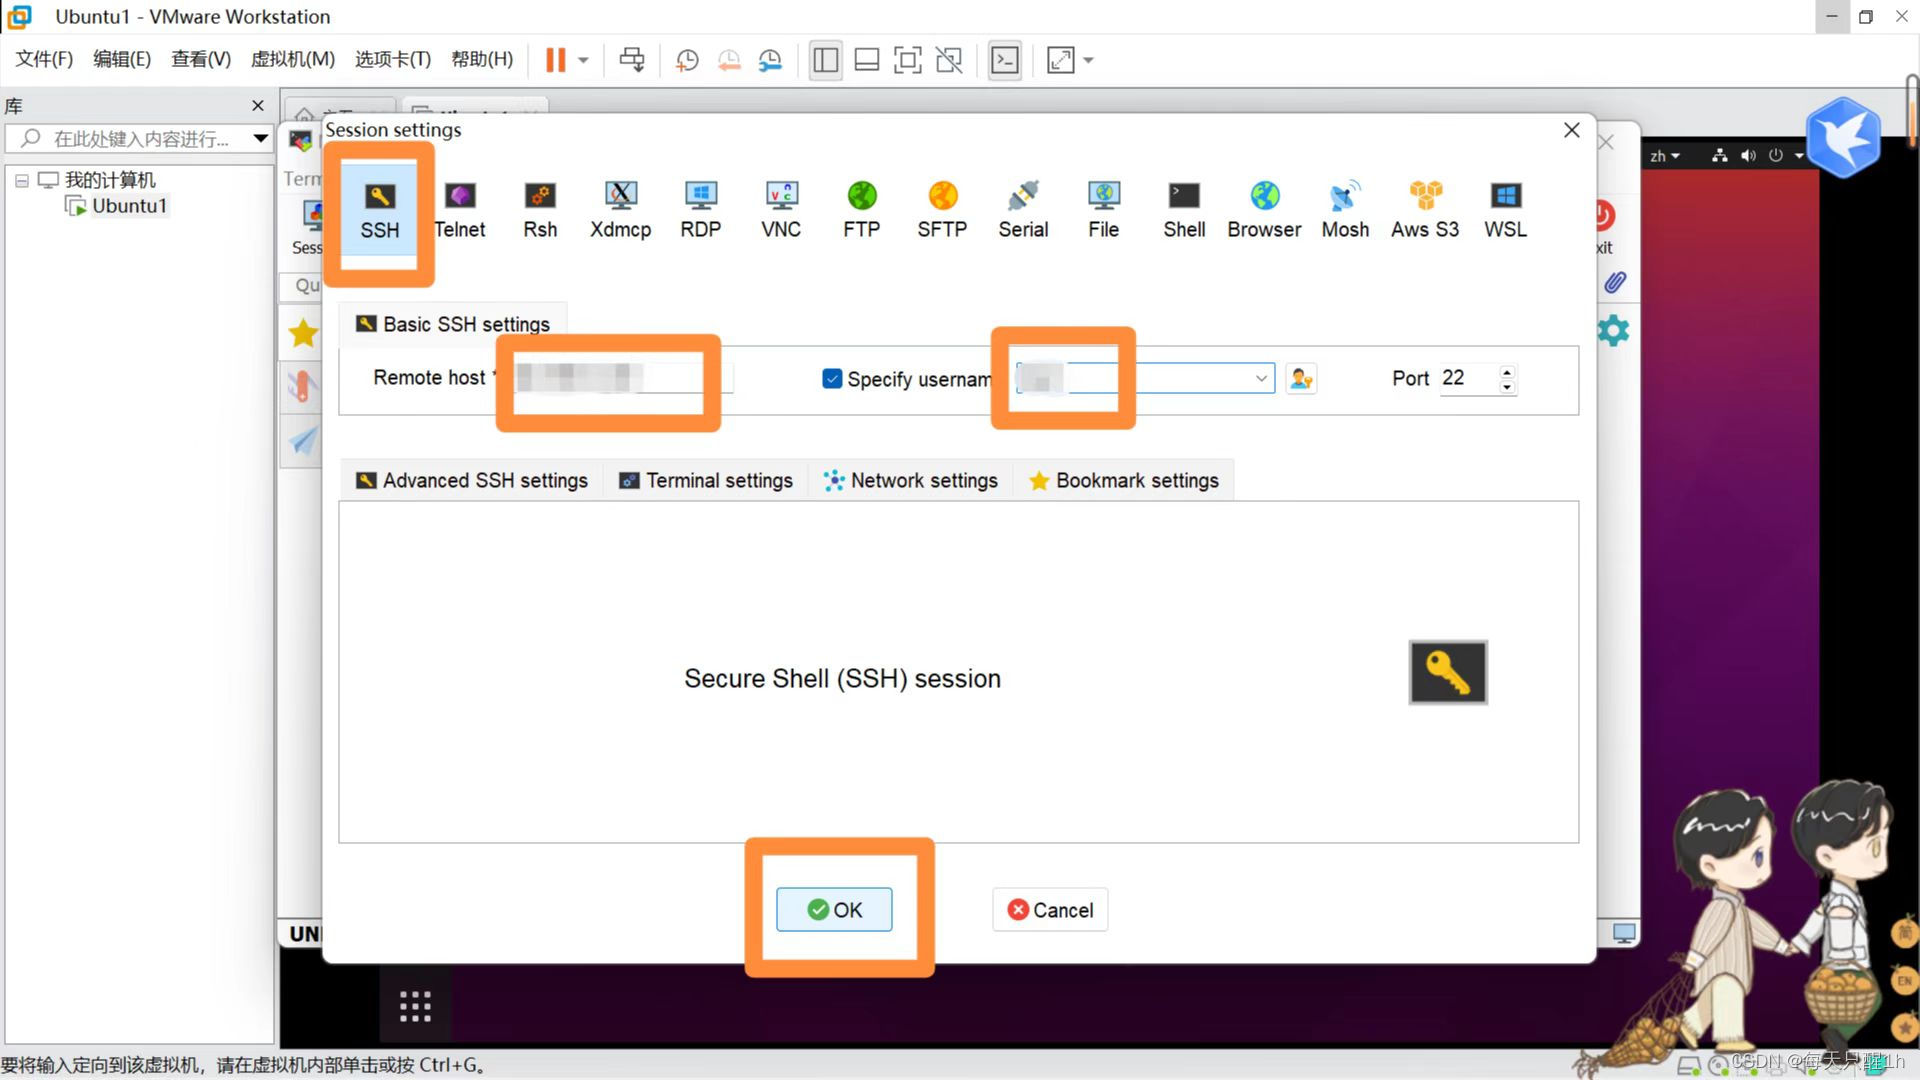 使用MobaXterm远程连接Linux服务器（Ubuntu）